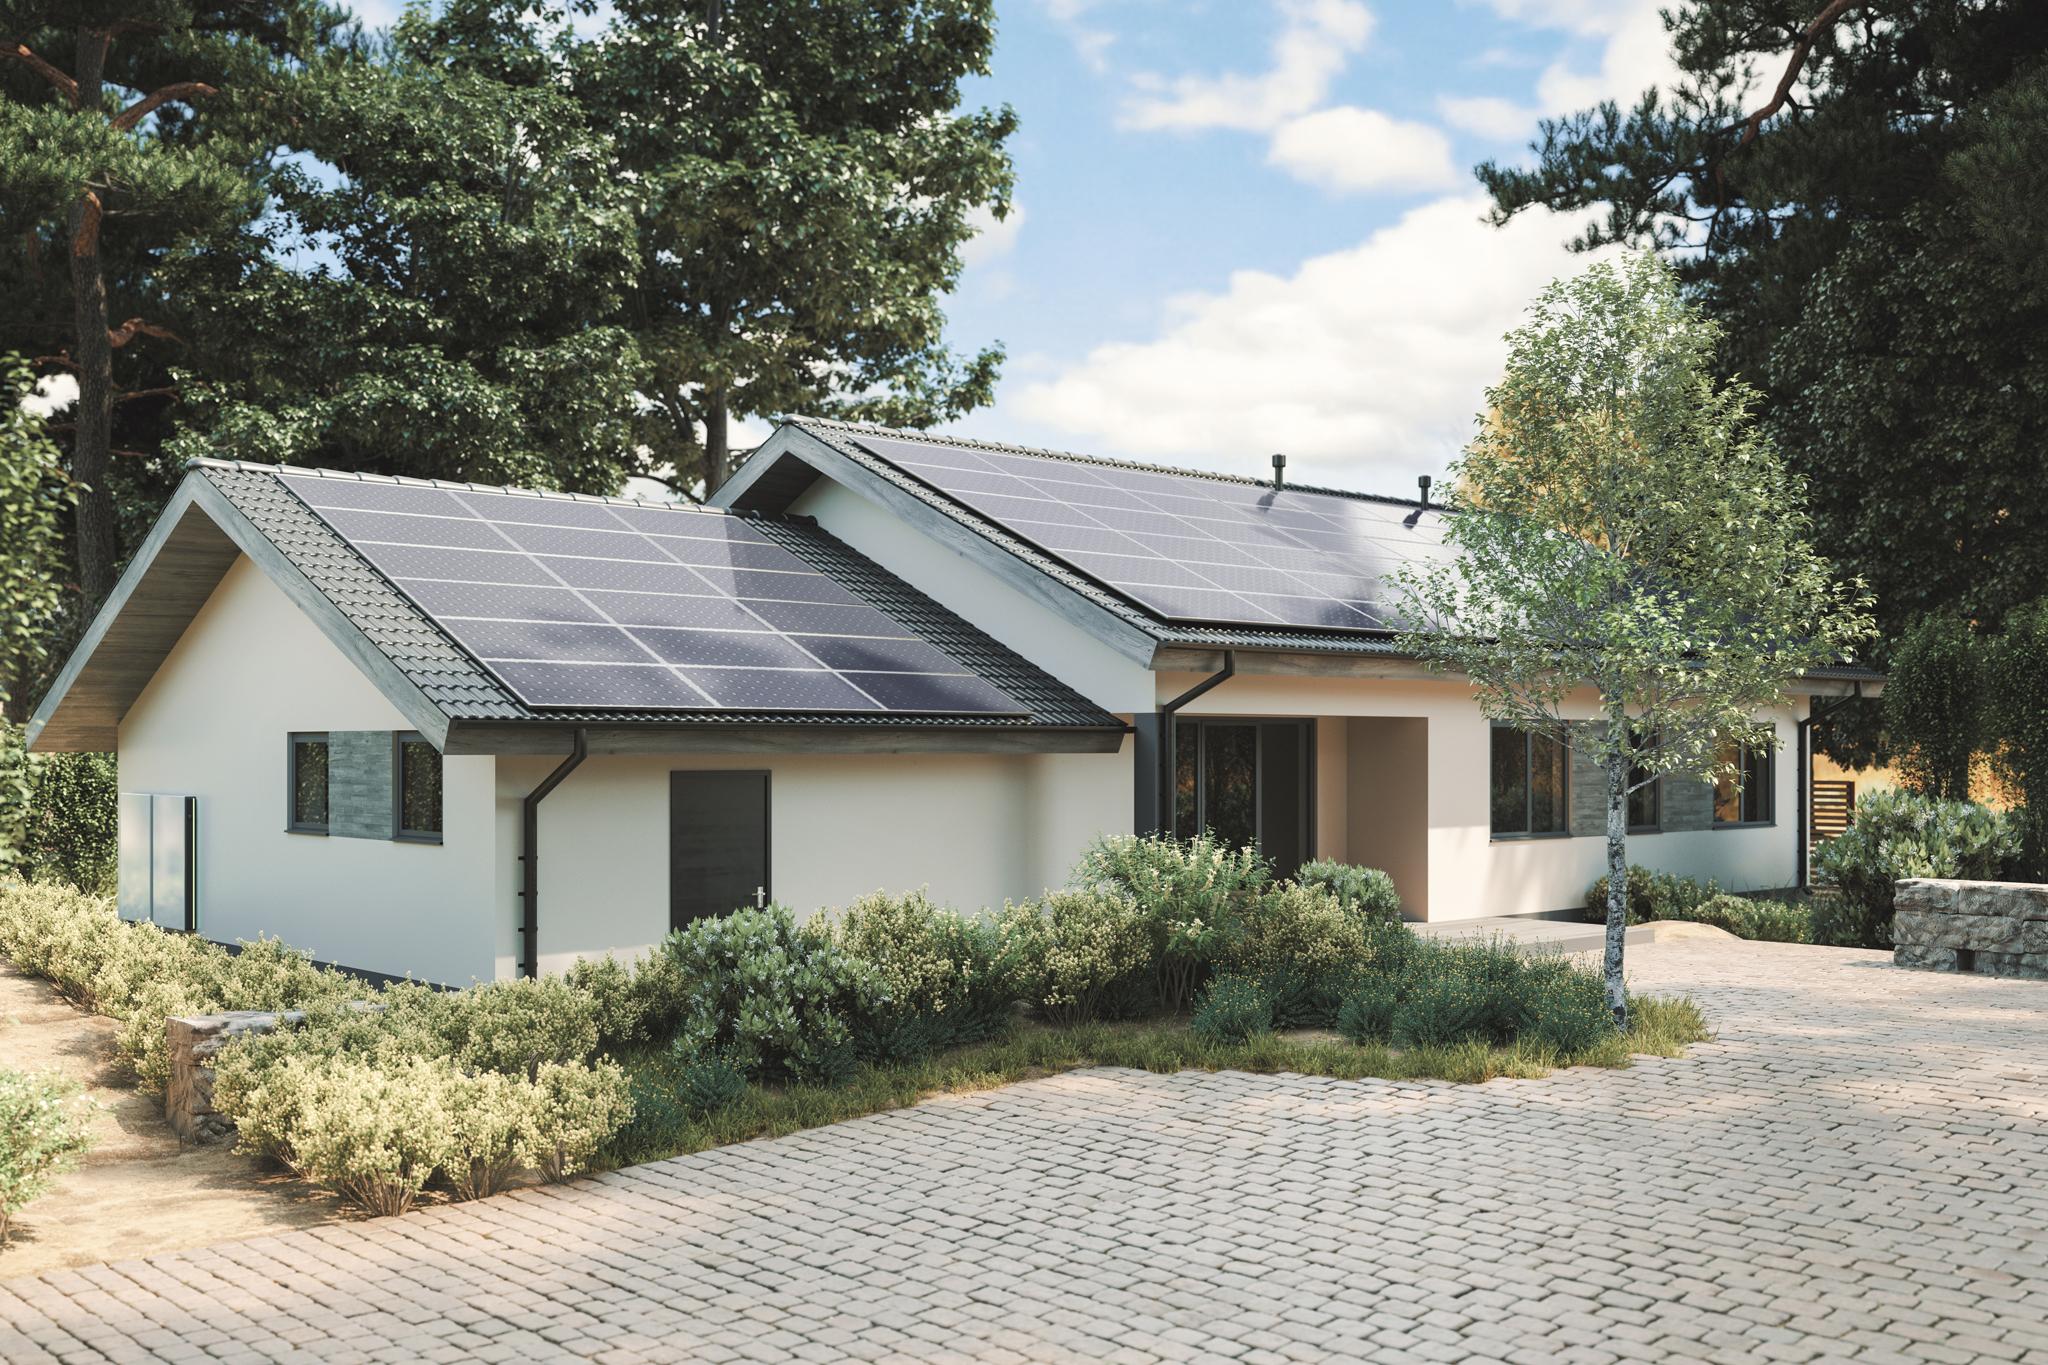 Einfamilienhaus mit PV-Anlage auf dem Dach – Nachhaltigkeit durch Solarenergie